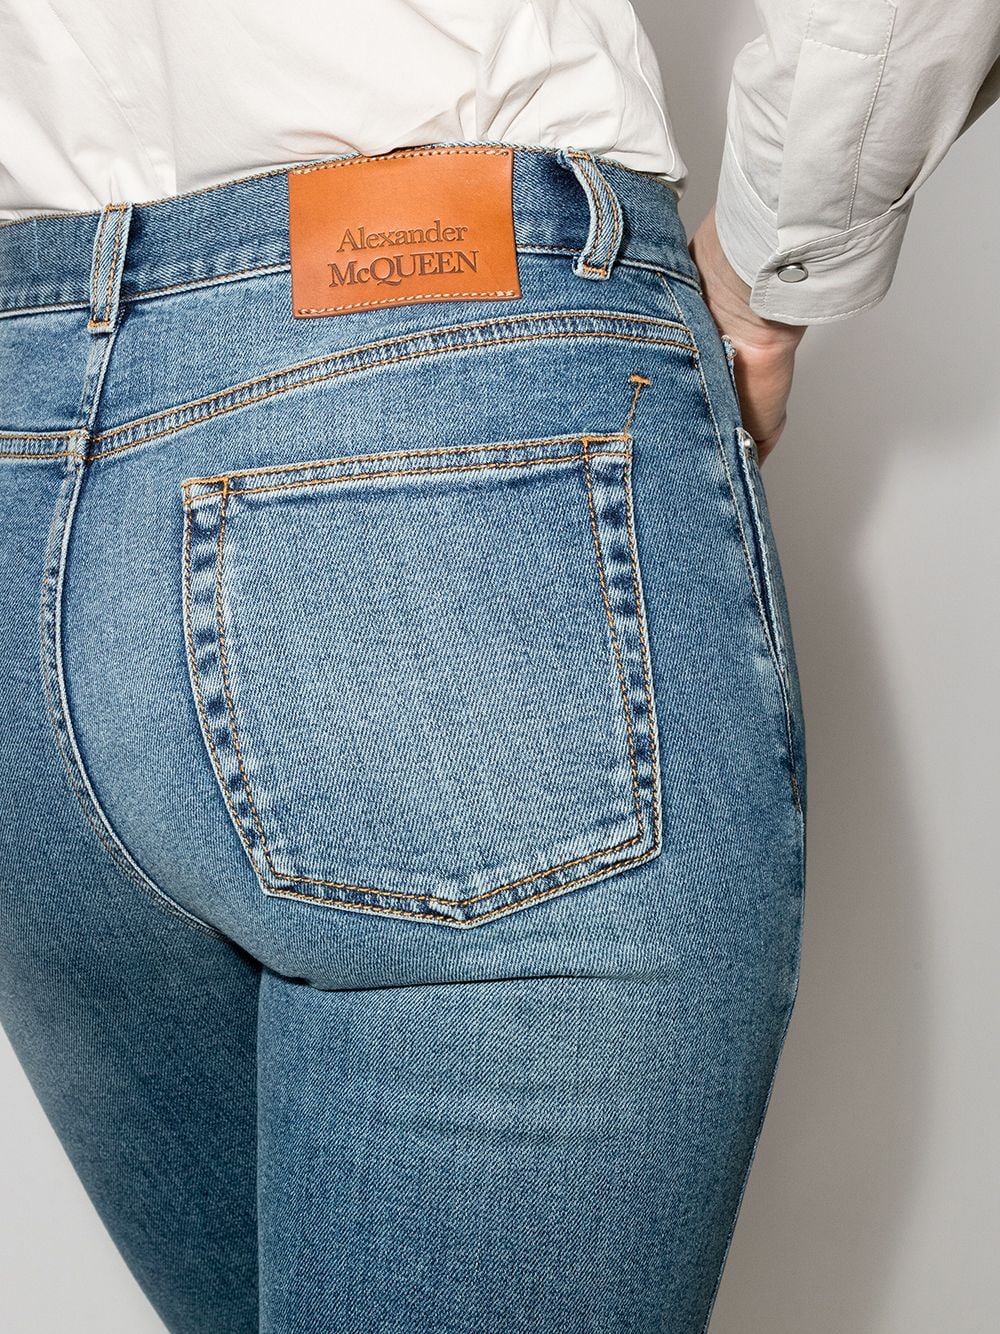 фото Alexander mcqueen джинсы скинни с завышенной талией